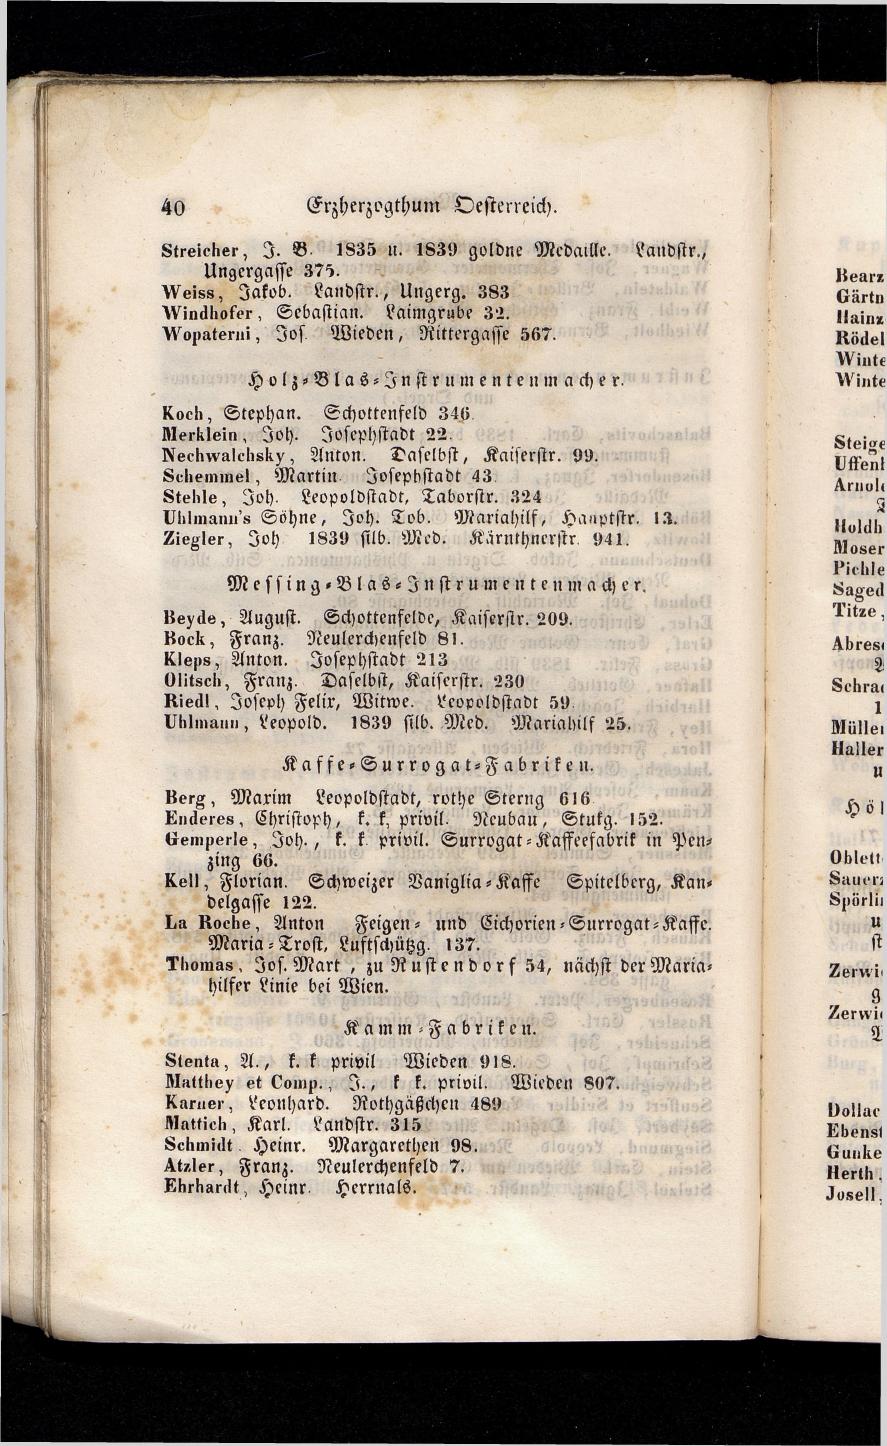 Grosses Adressbuch der Kaufleute. No. 13. Oesterreich ober u. unter der Enns 1844 - Seite 44